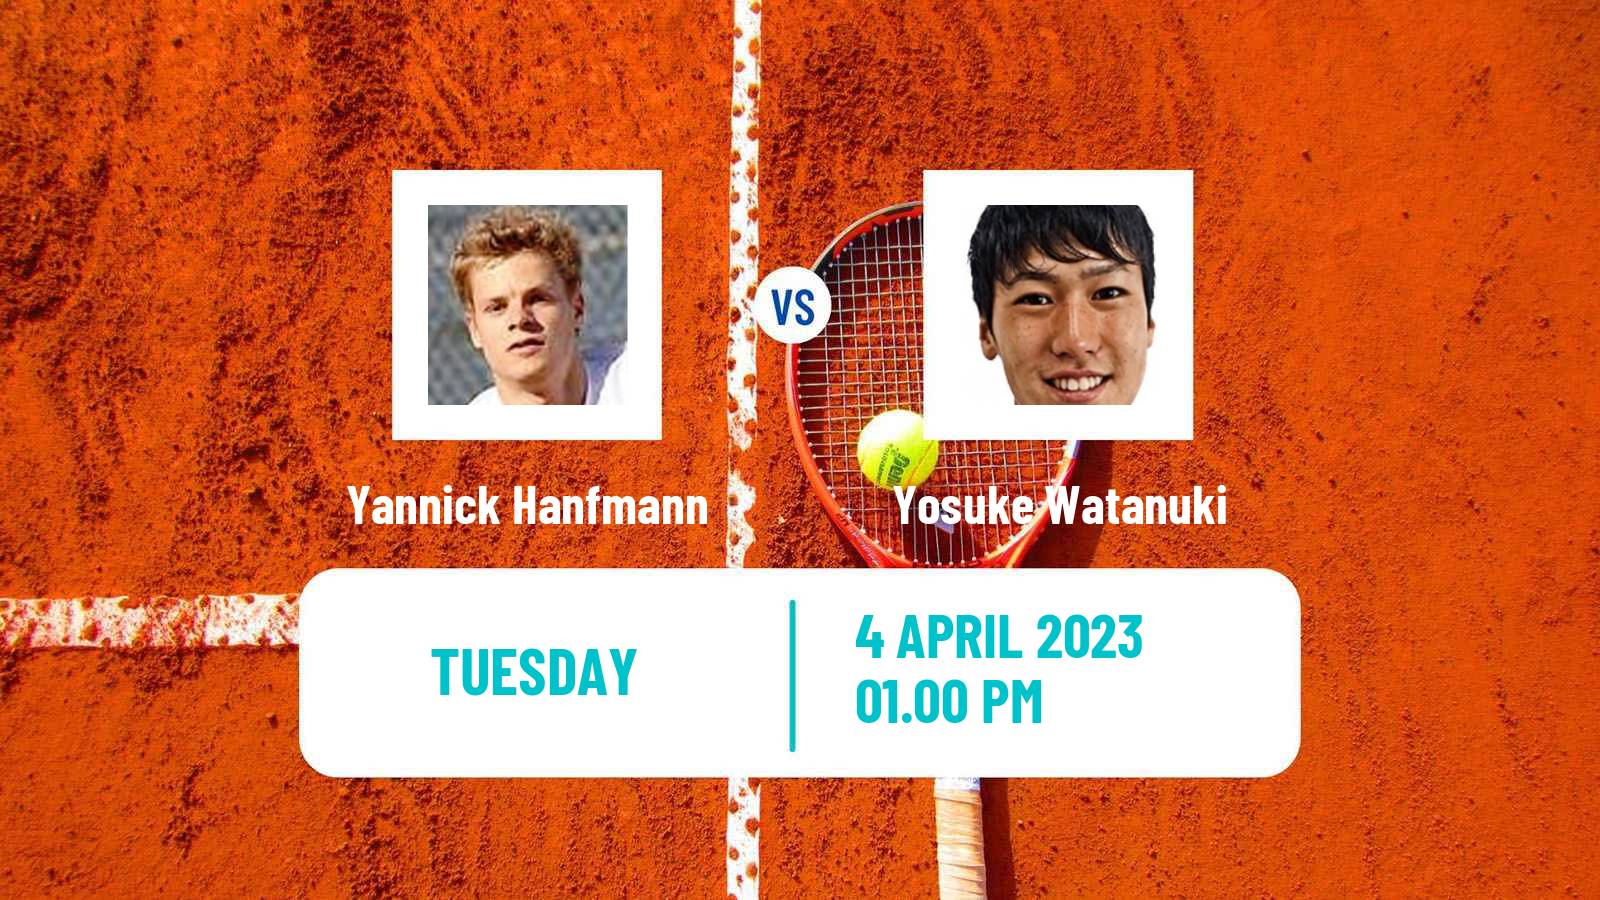 Tennis ATP Houston Yannick Hanfmann - Yosuke Watanuki